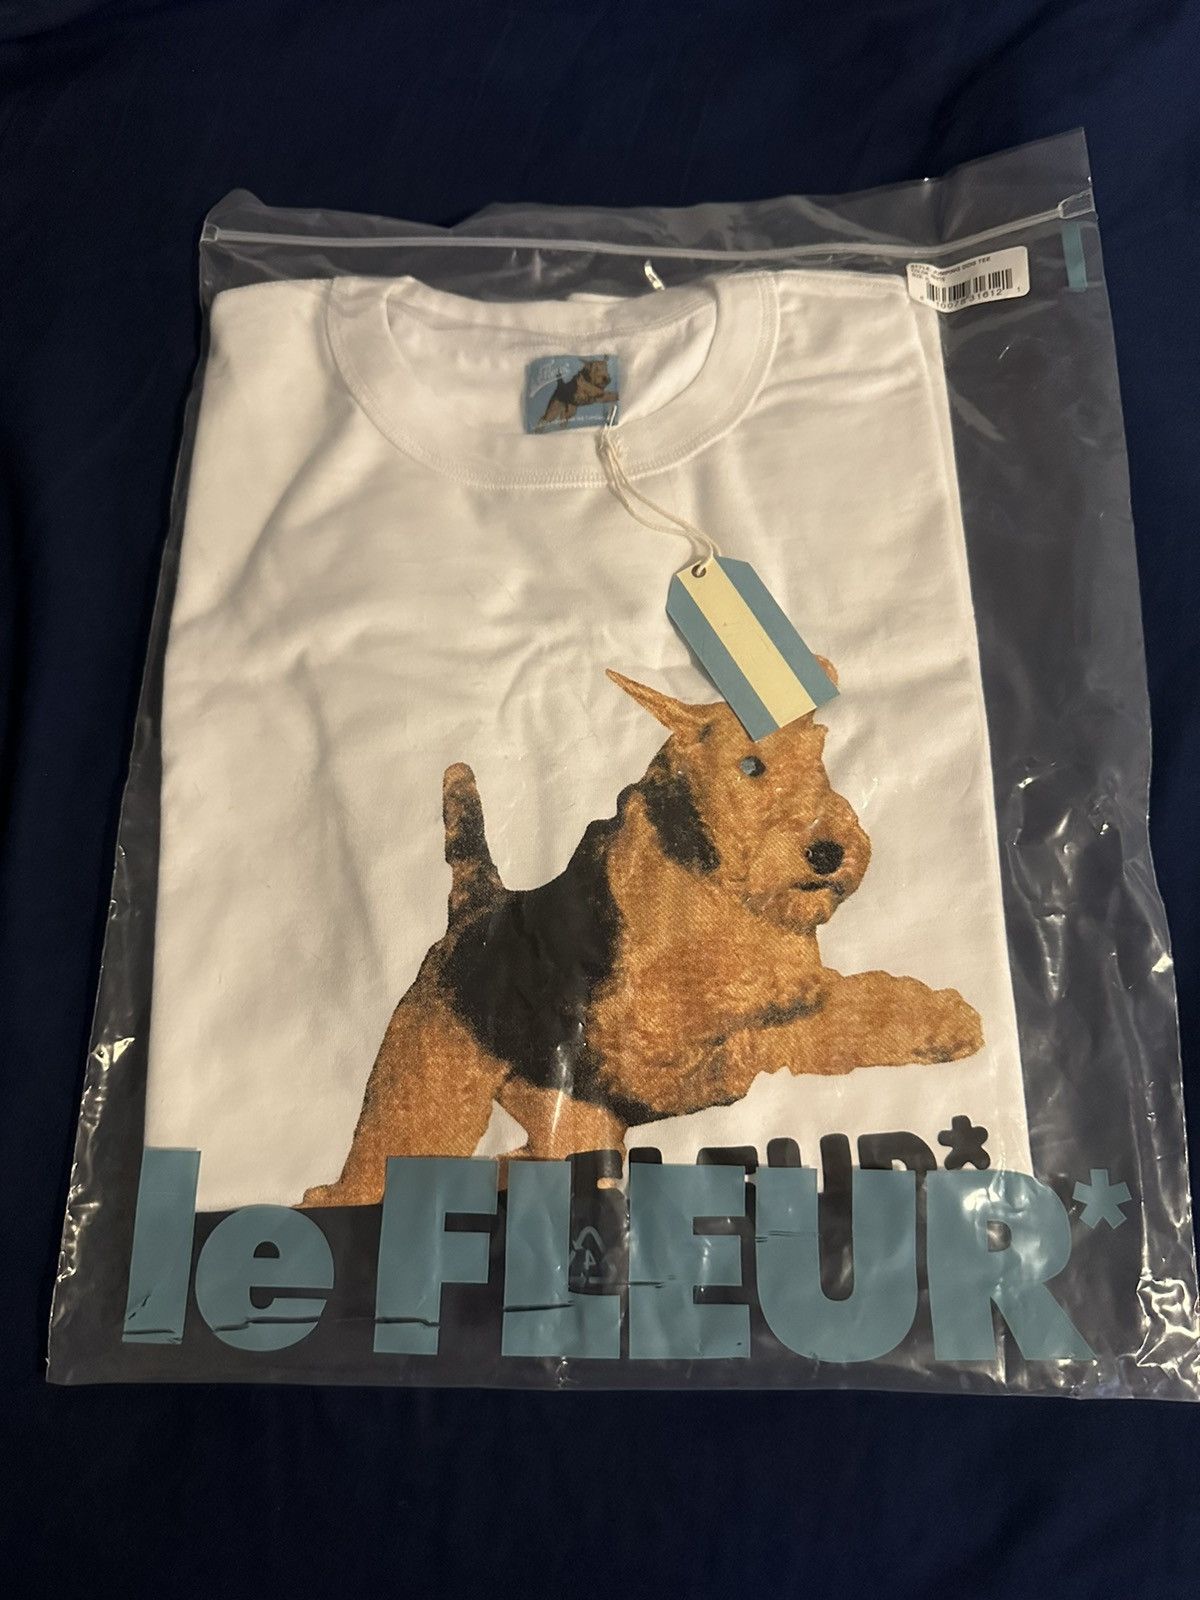 Dog Le Fleur T-Shirt - TeeHex